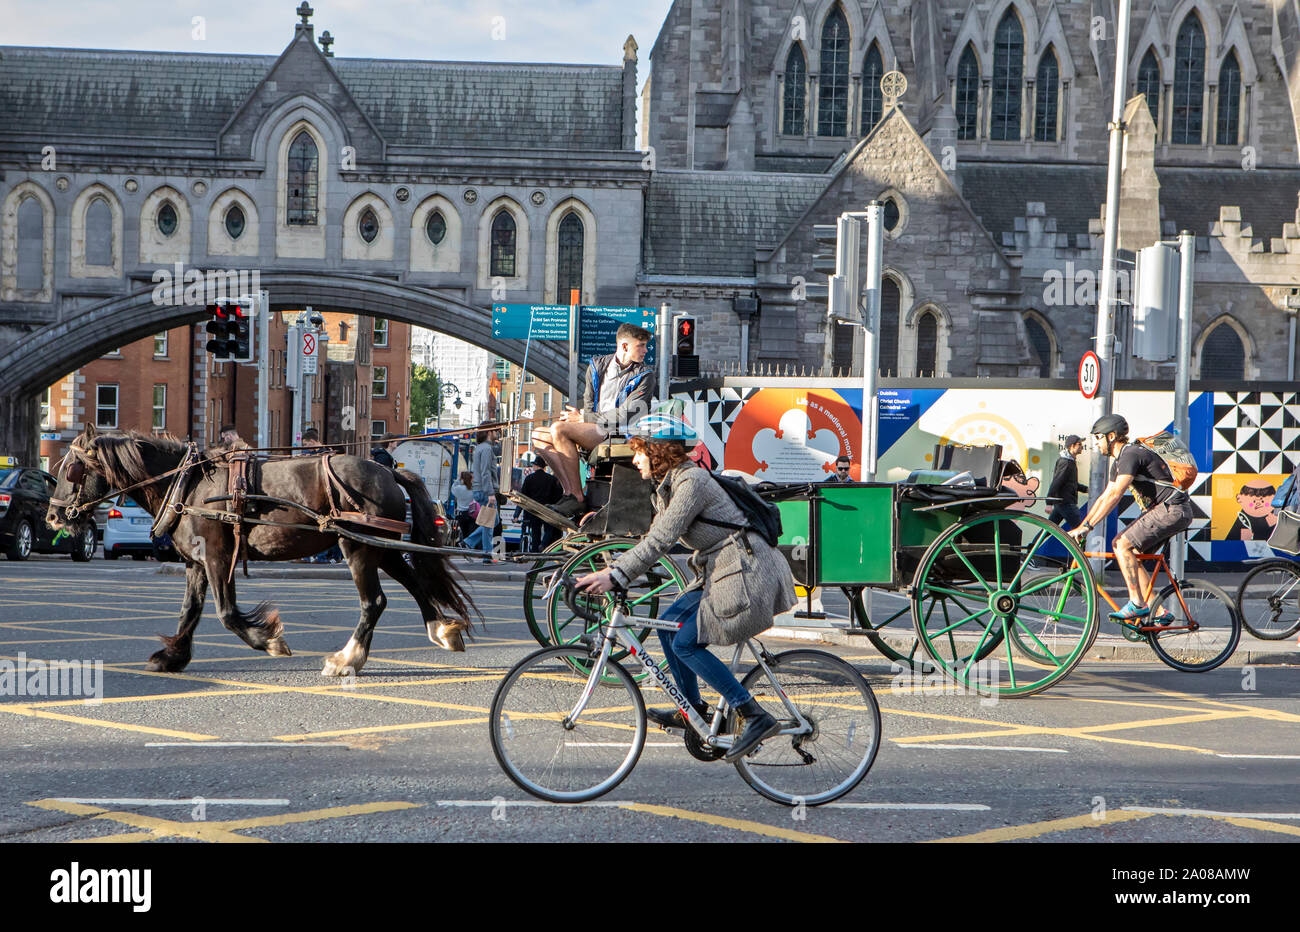 Ciclisti, una carrozza trainata da cavalli, automobili (automobili) e pedoni condividono la strada a Dublino, Irlanda. Foto Stock